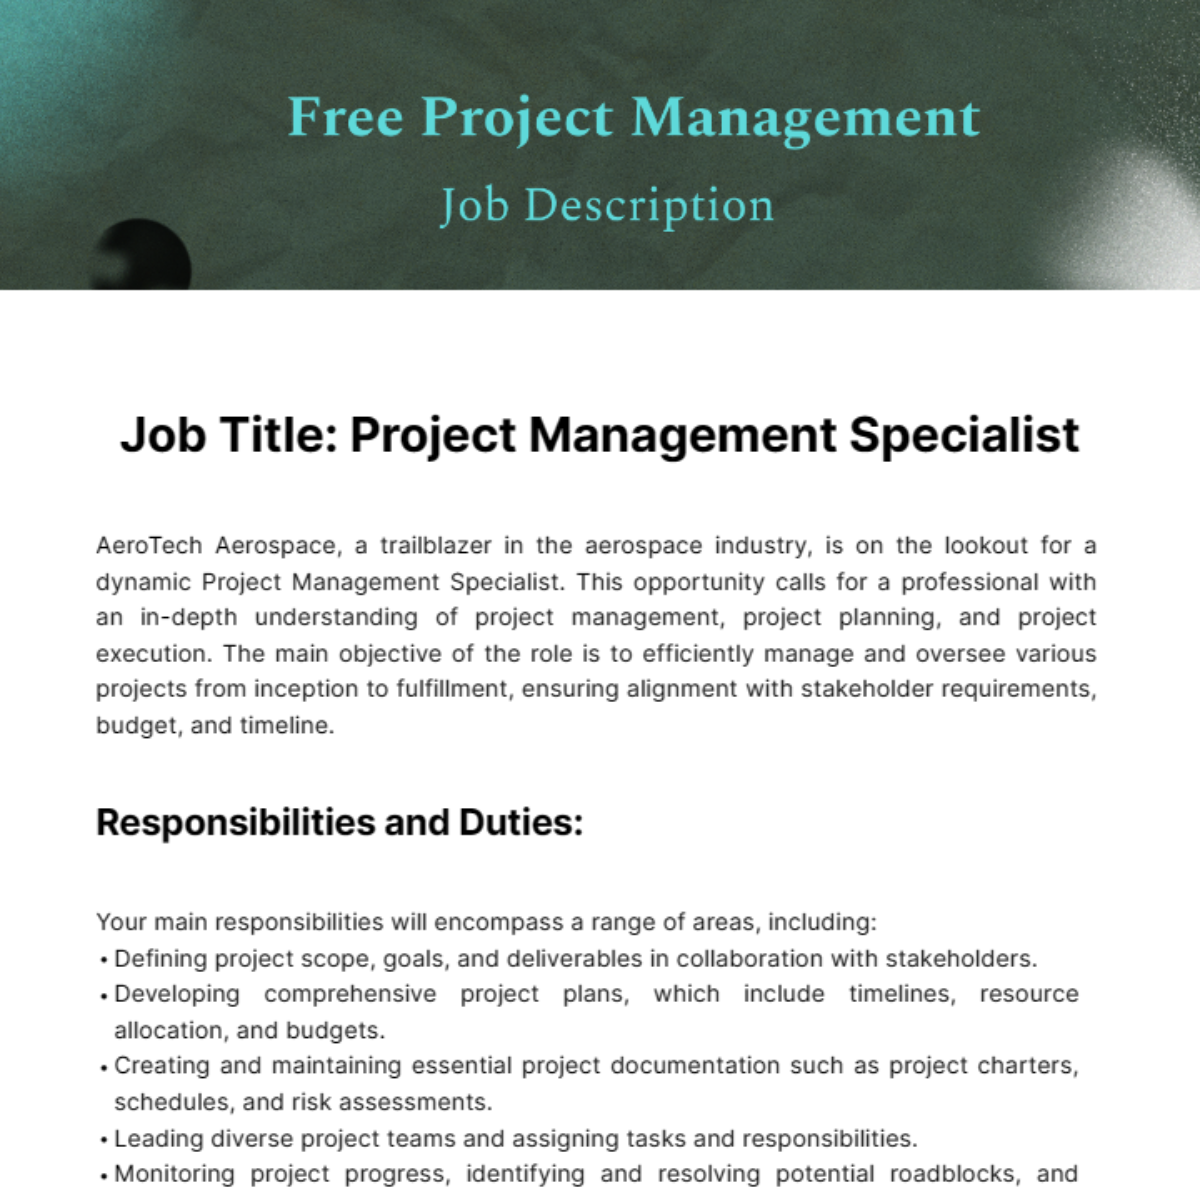 Free Project Management Job Description Template